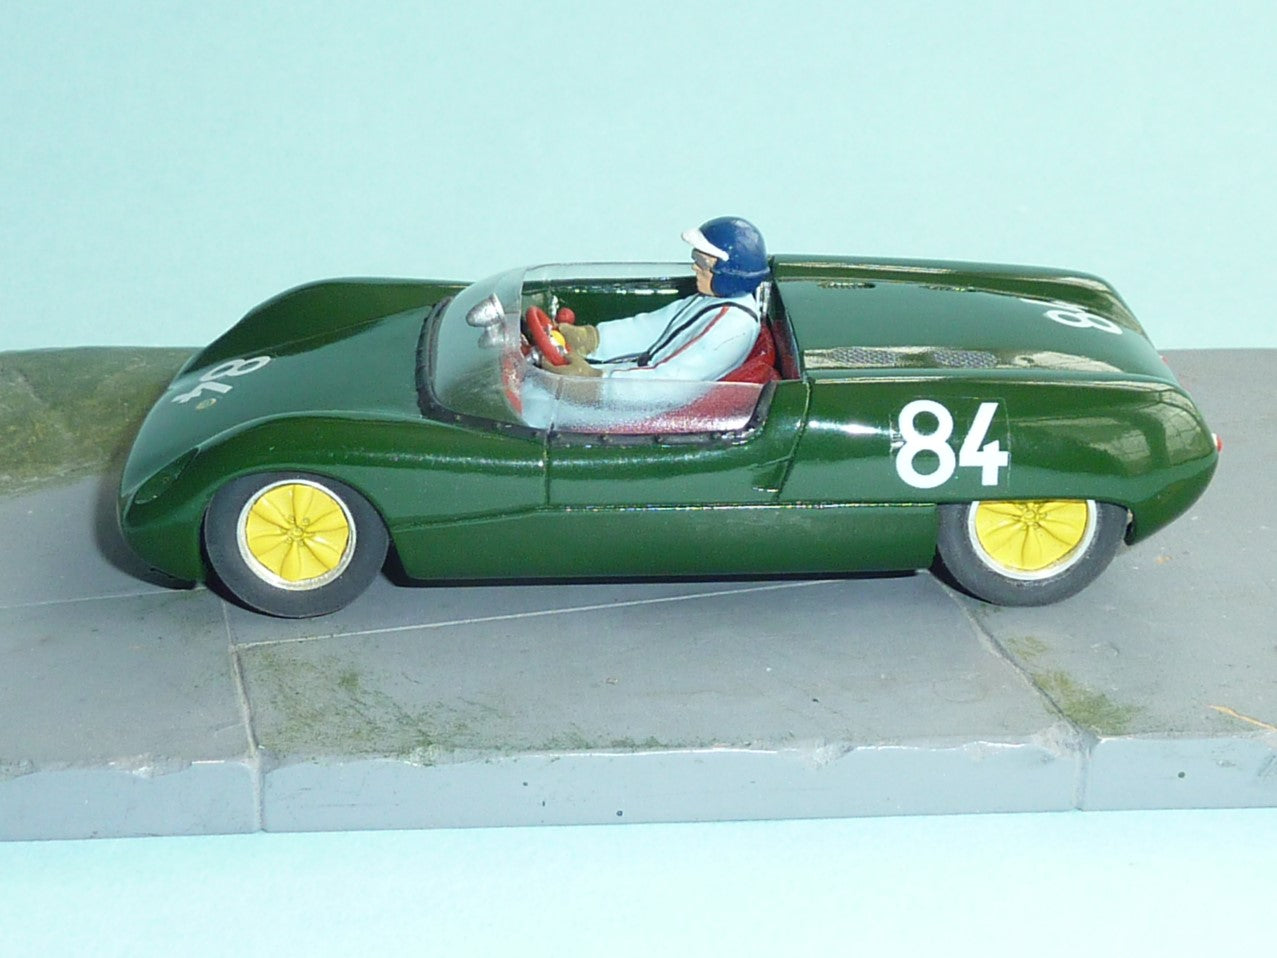 Lotus 23 A/B 1962 Nurburgring (GT-363)